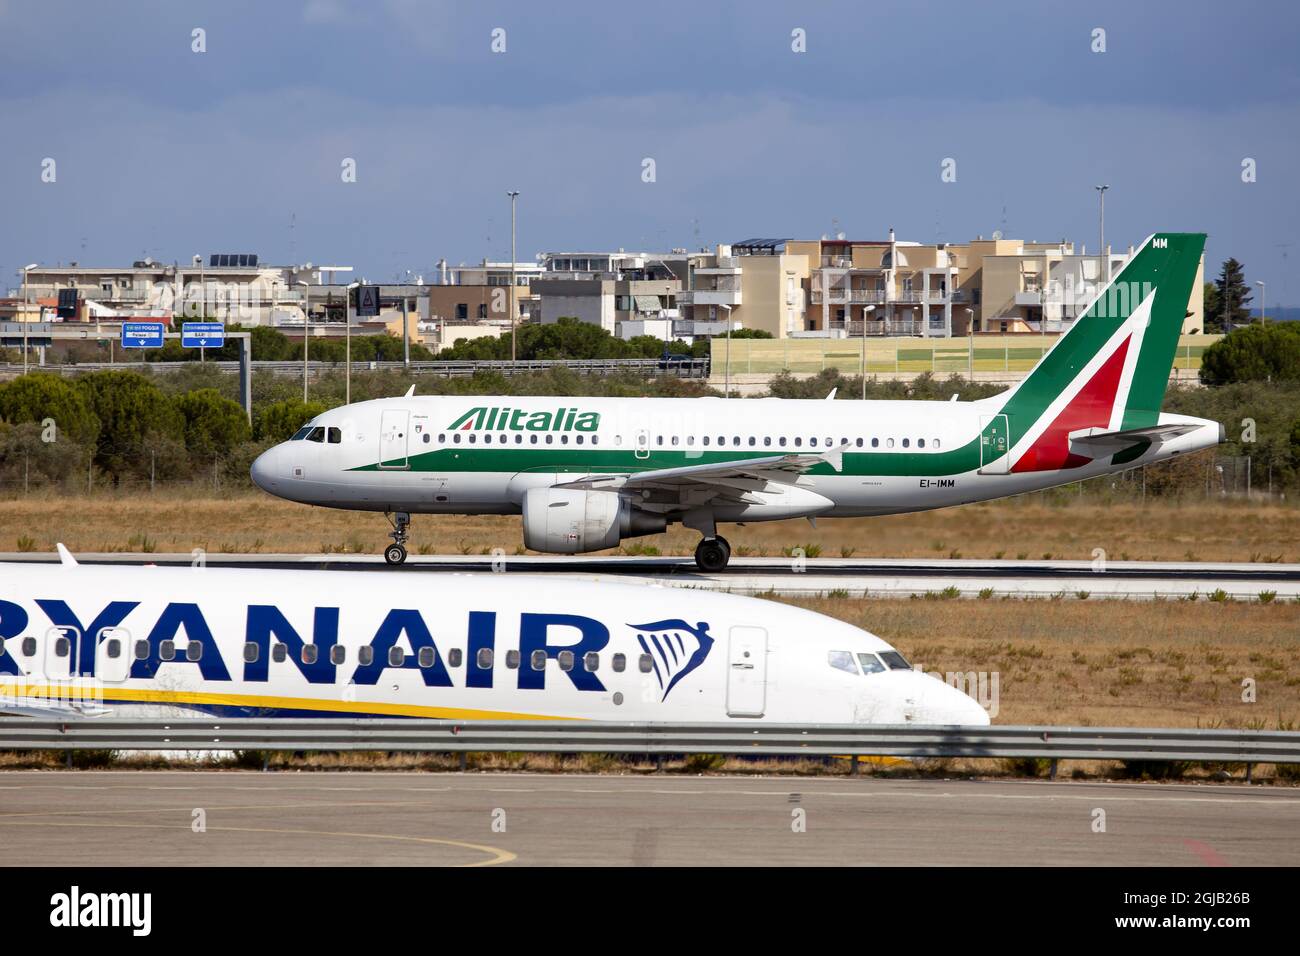 Alitalia, est le transporteur de drapeaux et la plus grande compagnie  aérienne d'Italie et de Ryanair au premier plan . Membre de l'alliance  SkyTeam, la compagnie aérienne a l'intention de se réintégrer